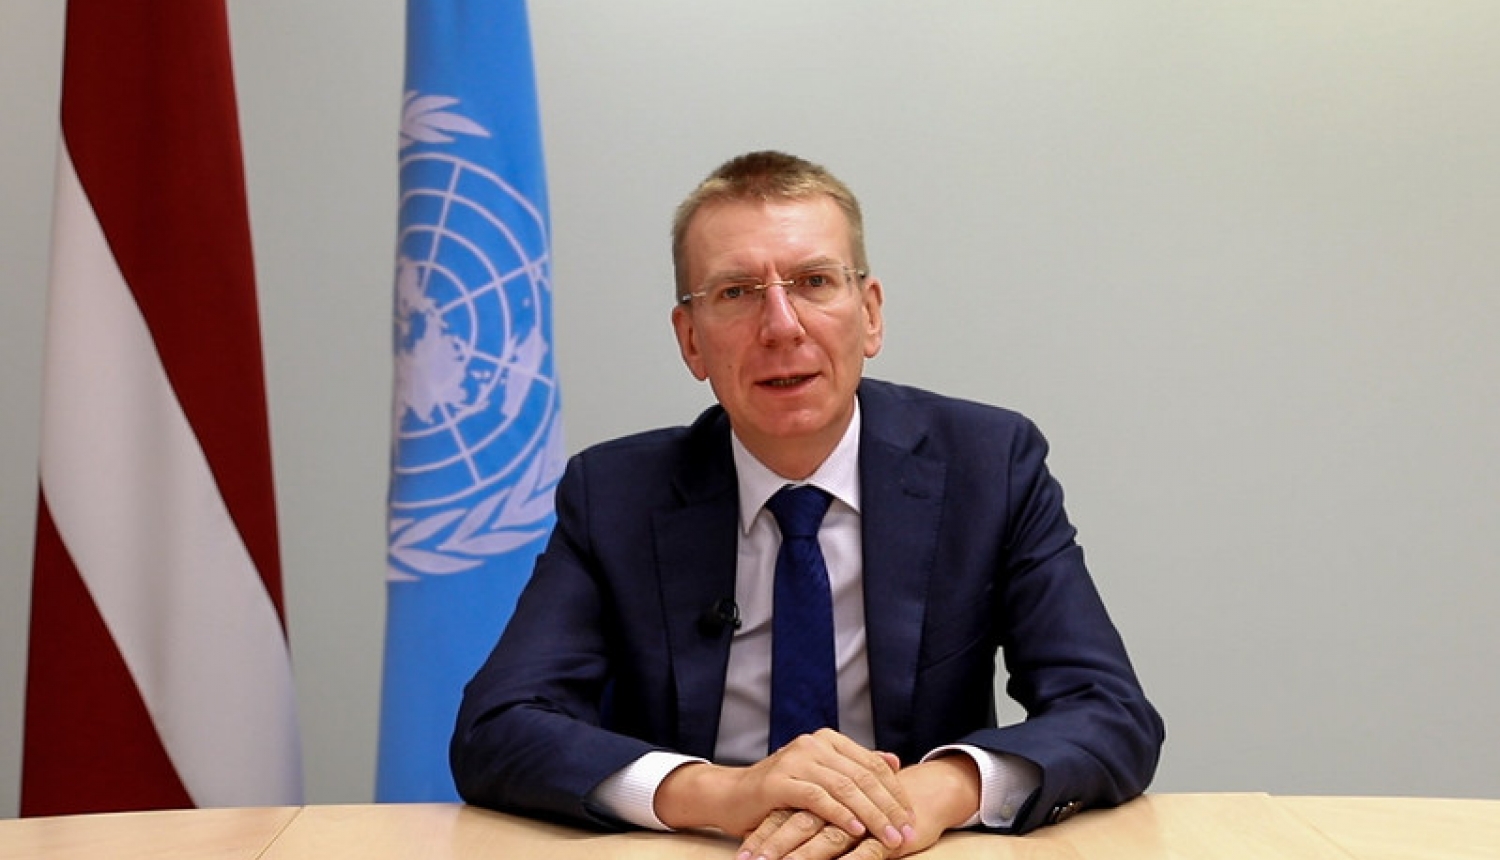 Ārlietu ministrs aicina ANO Cilvēktiesību padomi izveidot ANO Cilvēktiesību uzraudzības misiju Baltkrievijā